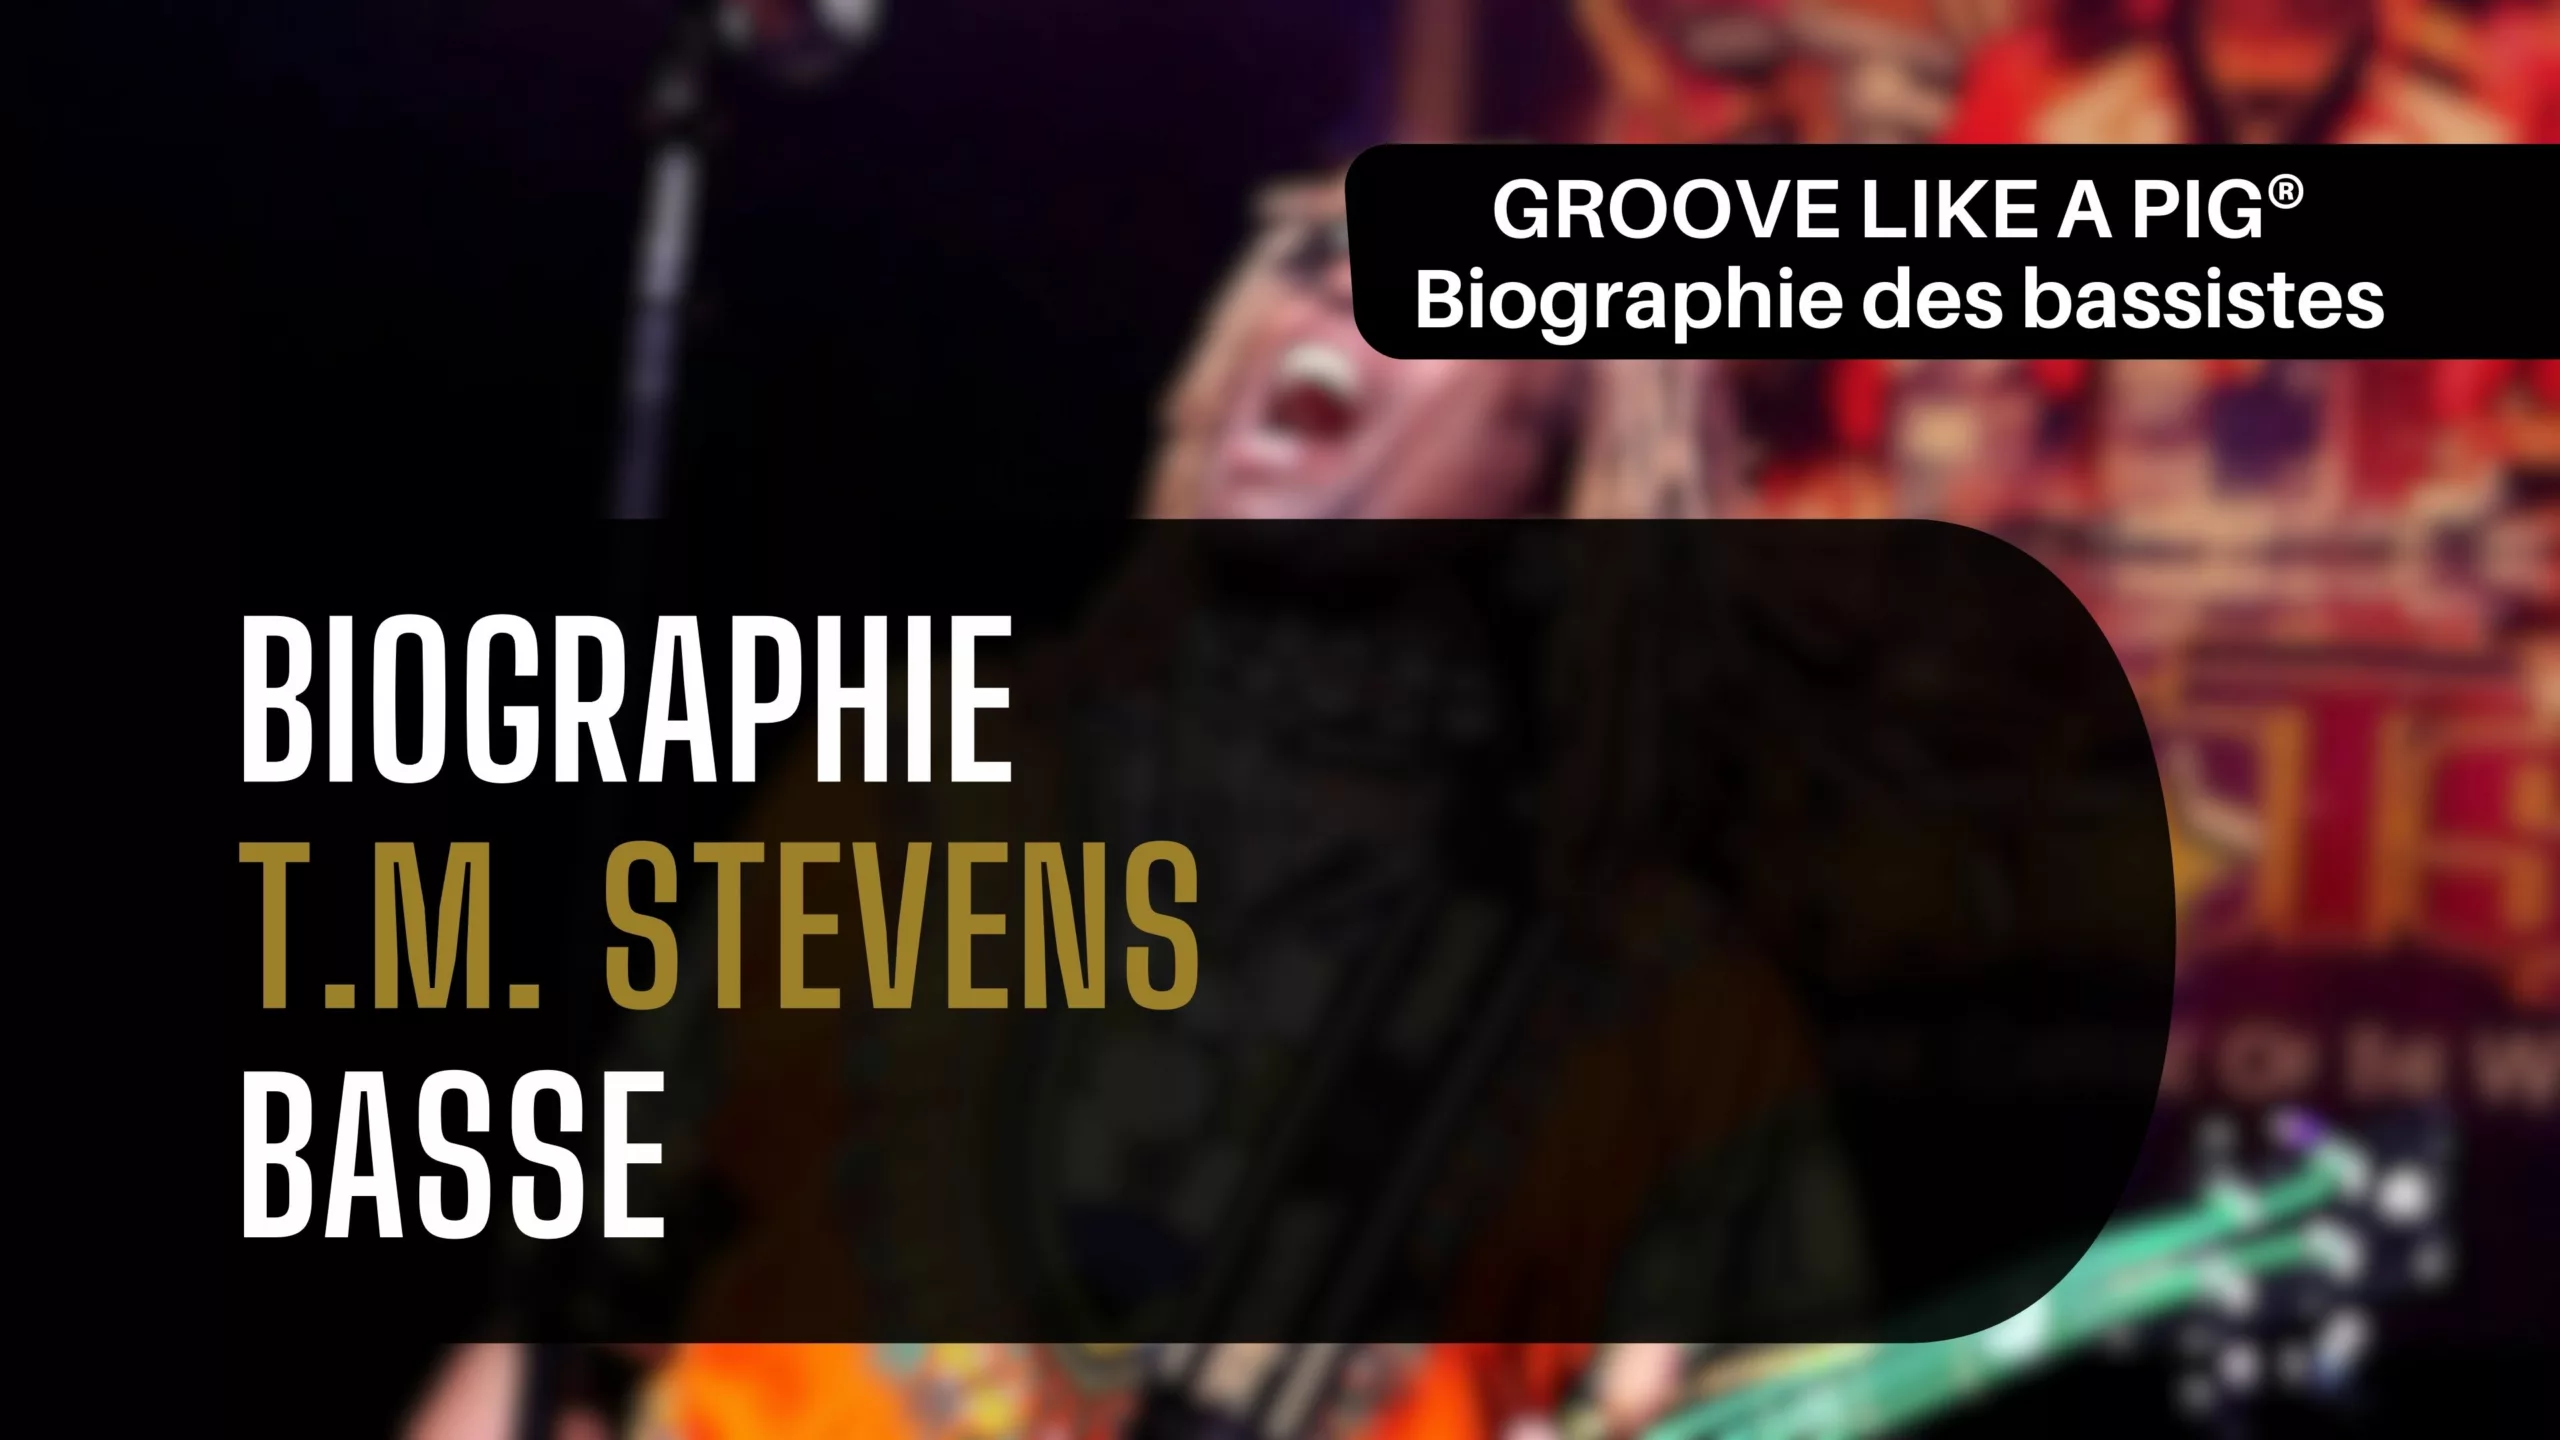 TM Stevens Signature Bass. T.M. Stevens